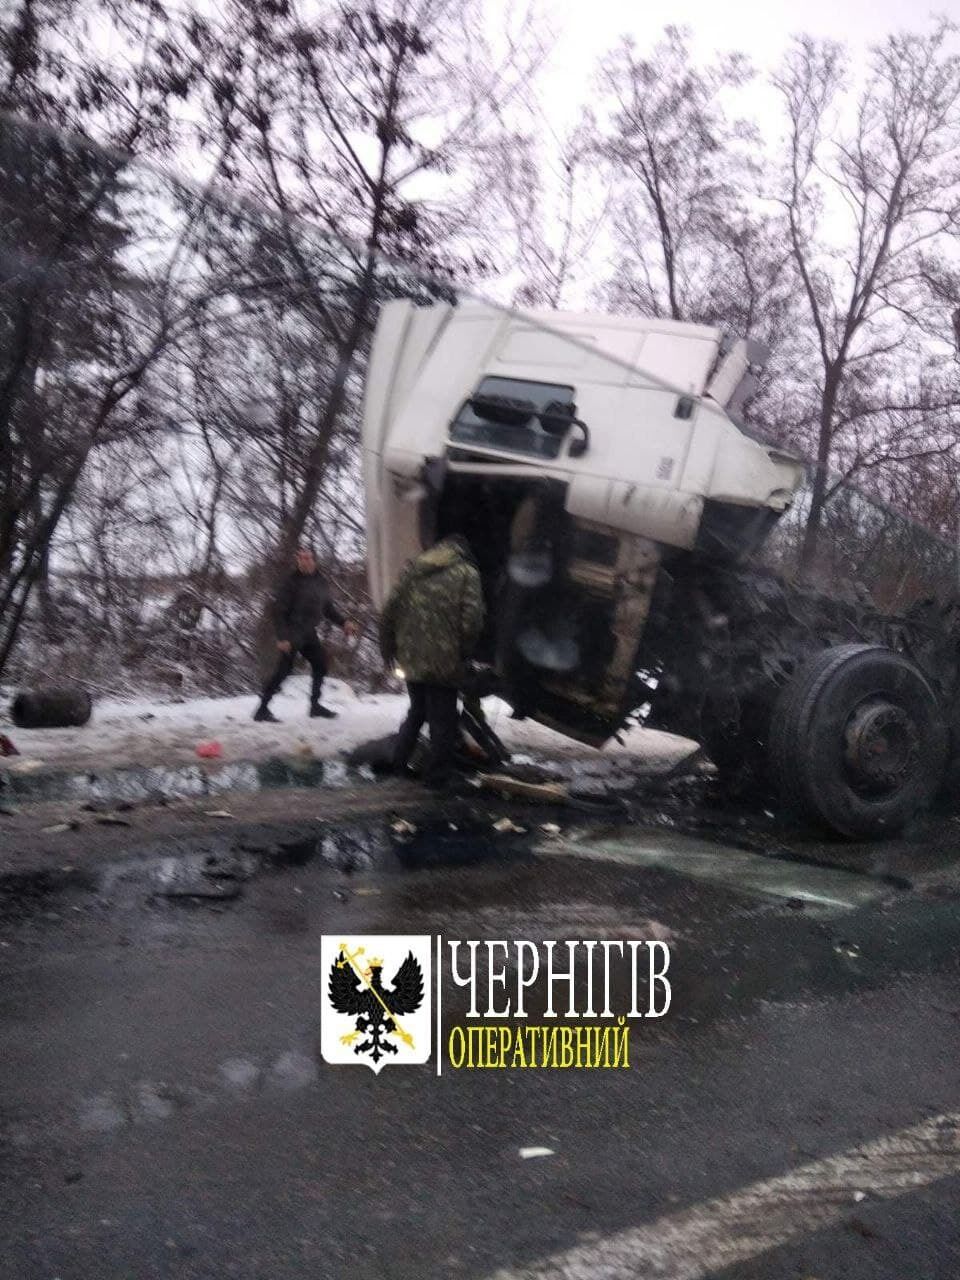 У Чернігівській області зіткнулися вантажівка та маршрутка, загинуло 11 людей. Фото